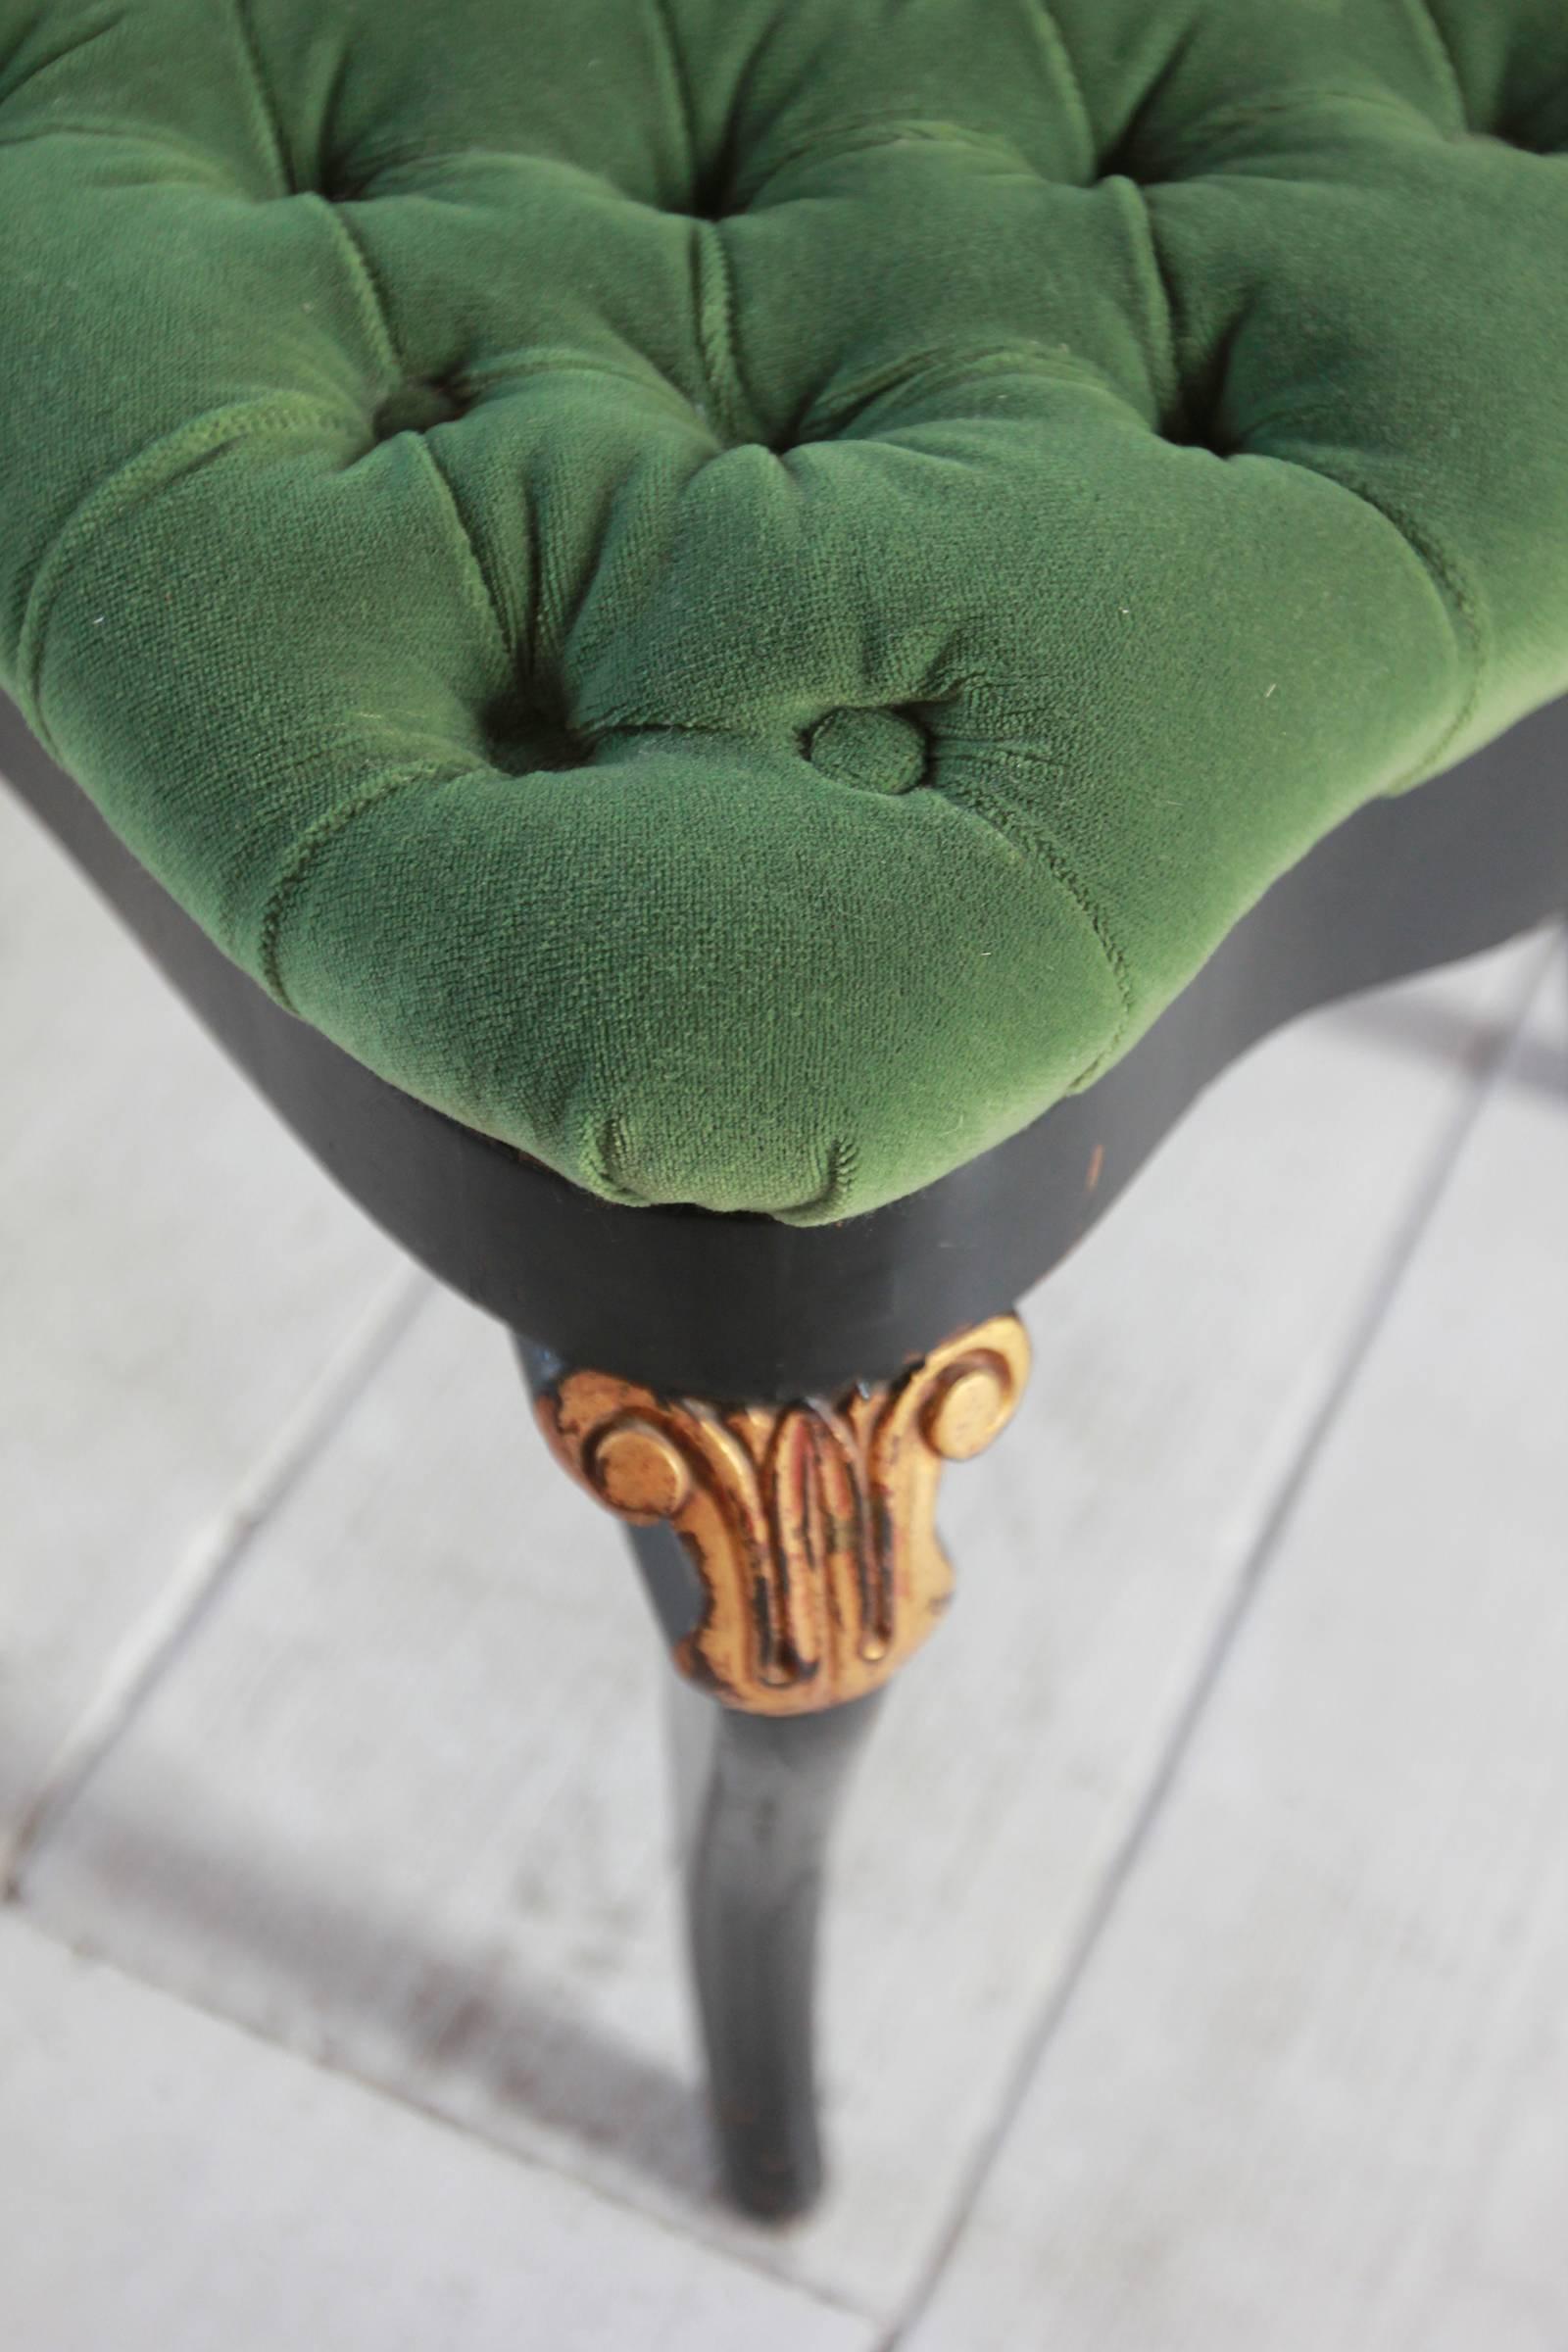 Black and Gold Painted Regency Chair Upholstered in Green Velvet 4